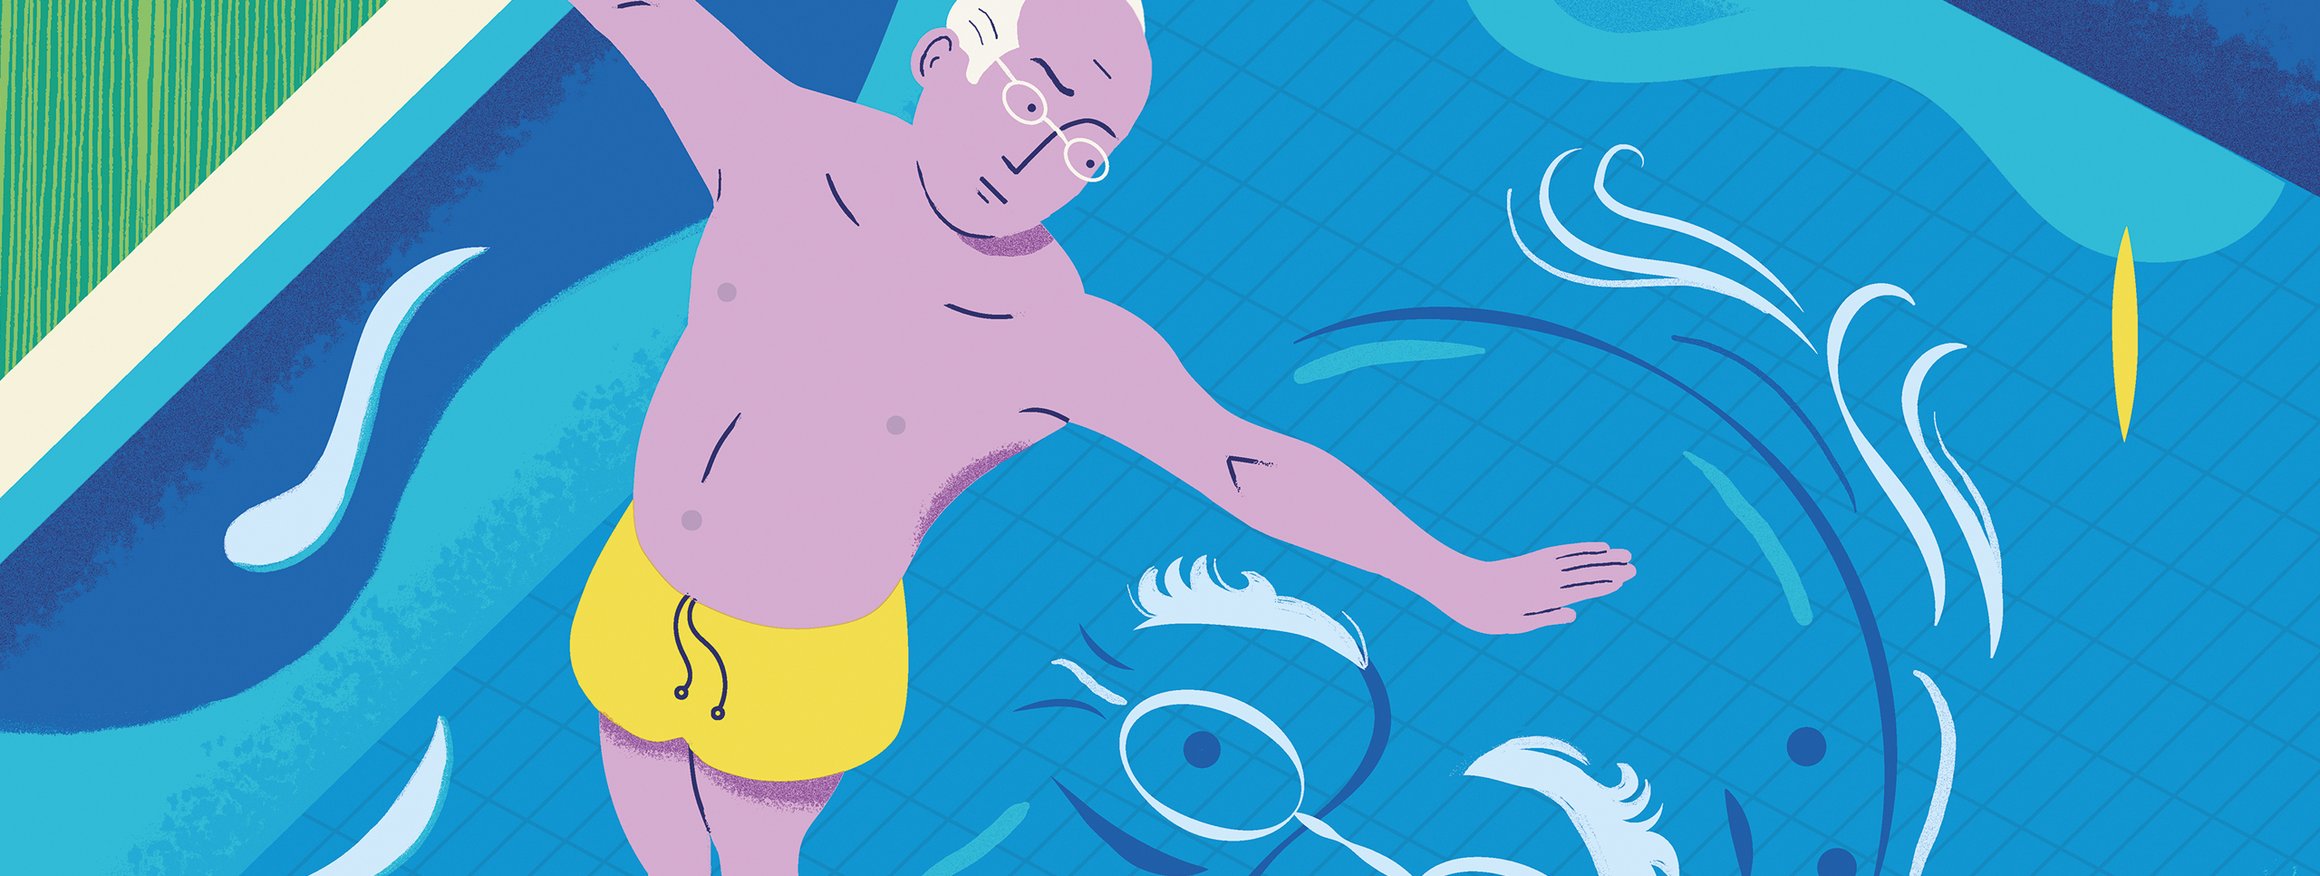 Die Illustration zeigt einen Rentner in gelber Badehose auf dem Sprungbrett, daneben ist die Kleidung, Schuhe und der Aktenkoffer, und setzt zum Sprung an, während auf dem Wasser des Pools die Umrisse seines Gesichts zu sehen ist